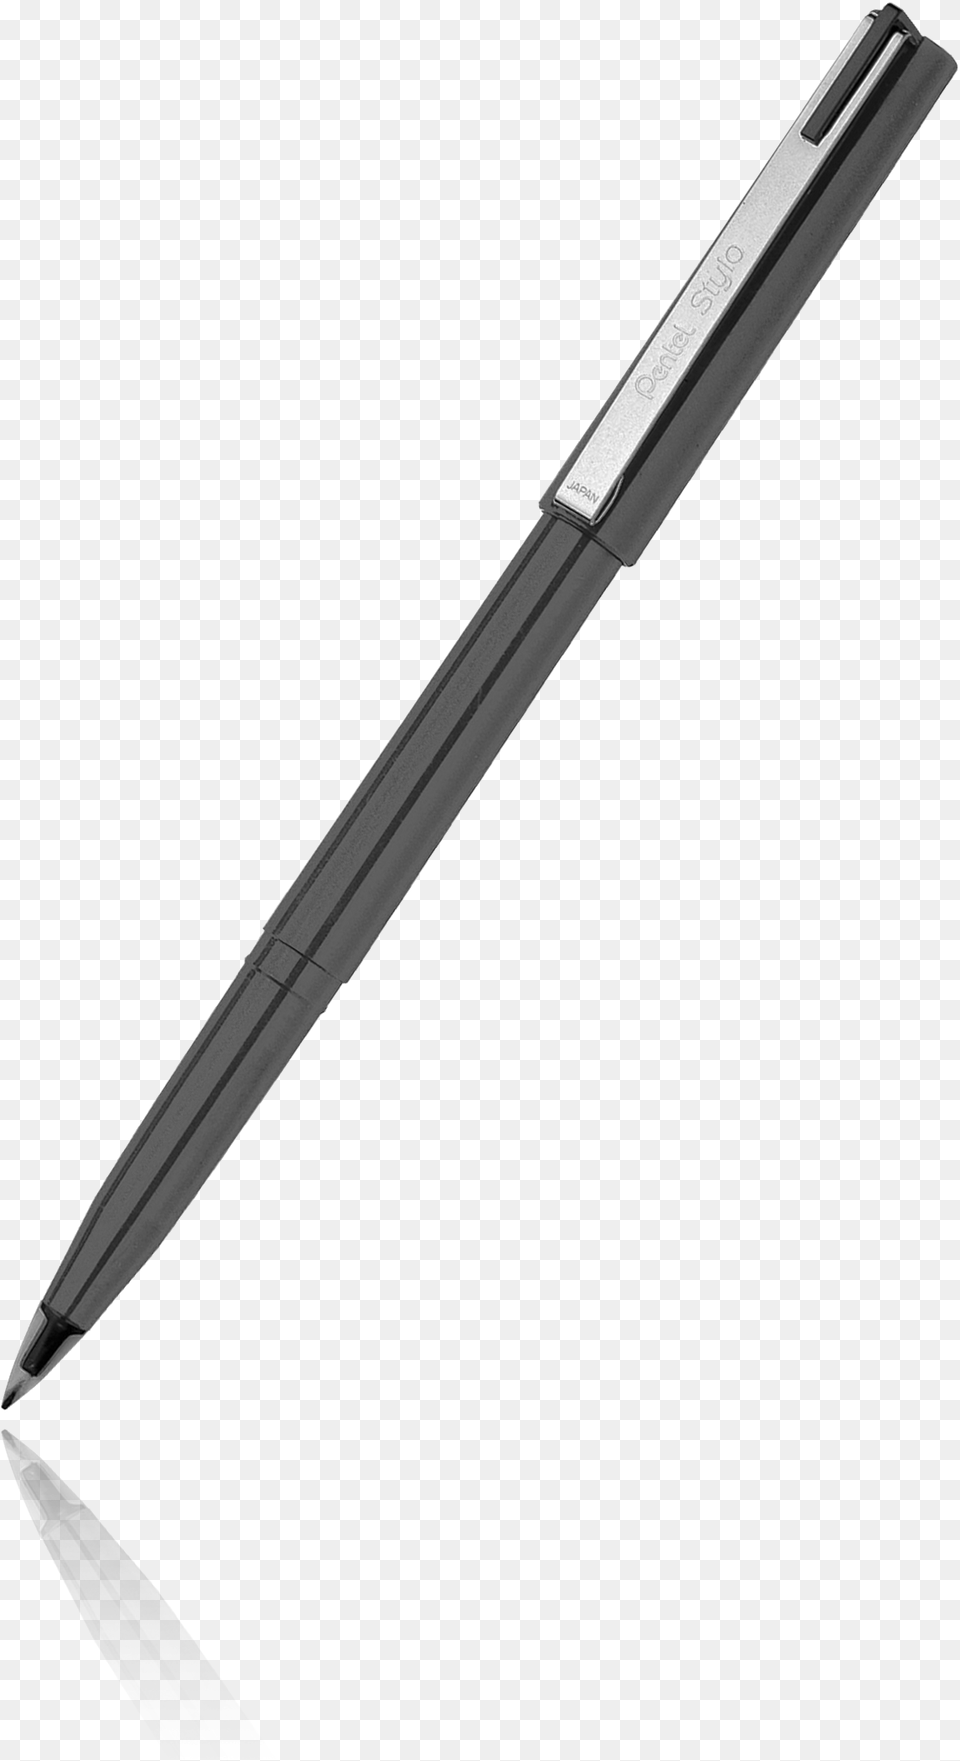 Pen Writing Style Eloquence Schopenhauer Nietzsche Economist Pen, Blade, Dagger, Knife, Weapon Free Transparent Png